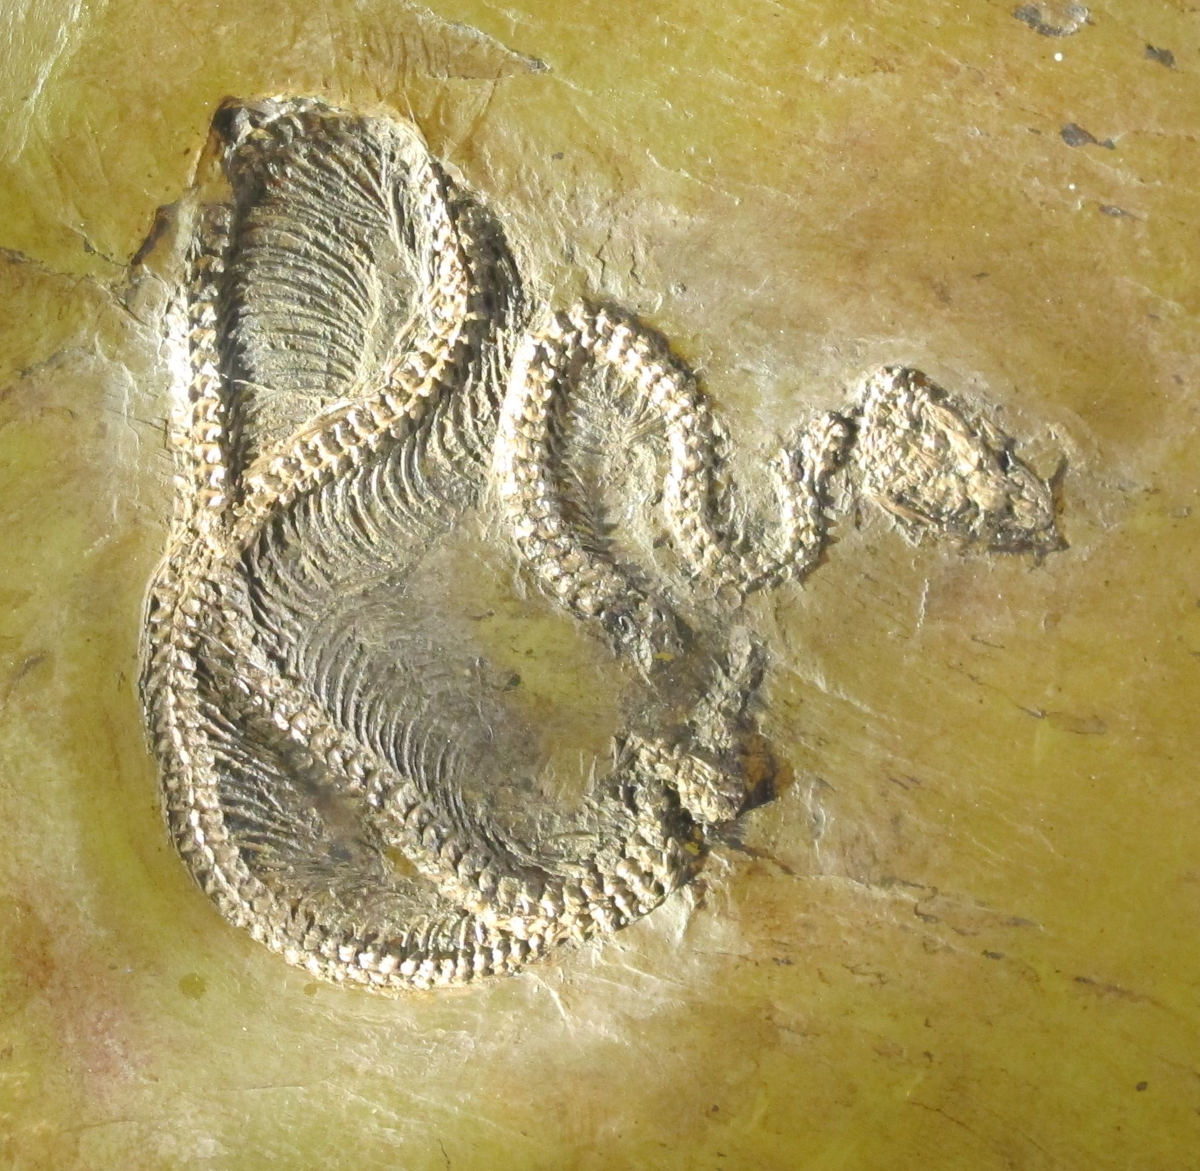 Fossilised bones in snake shape, whitish on a yellow background